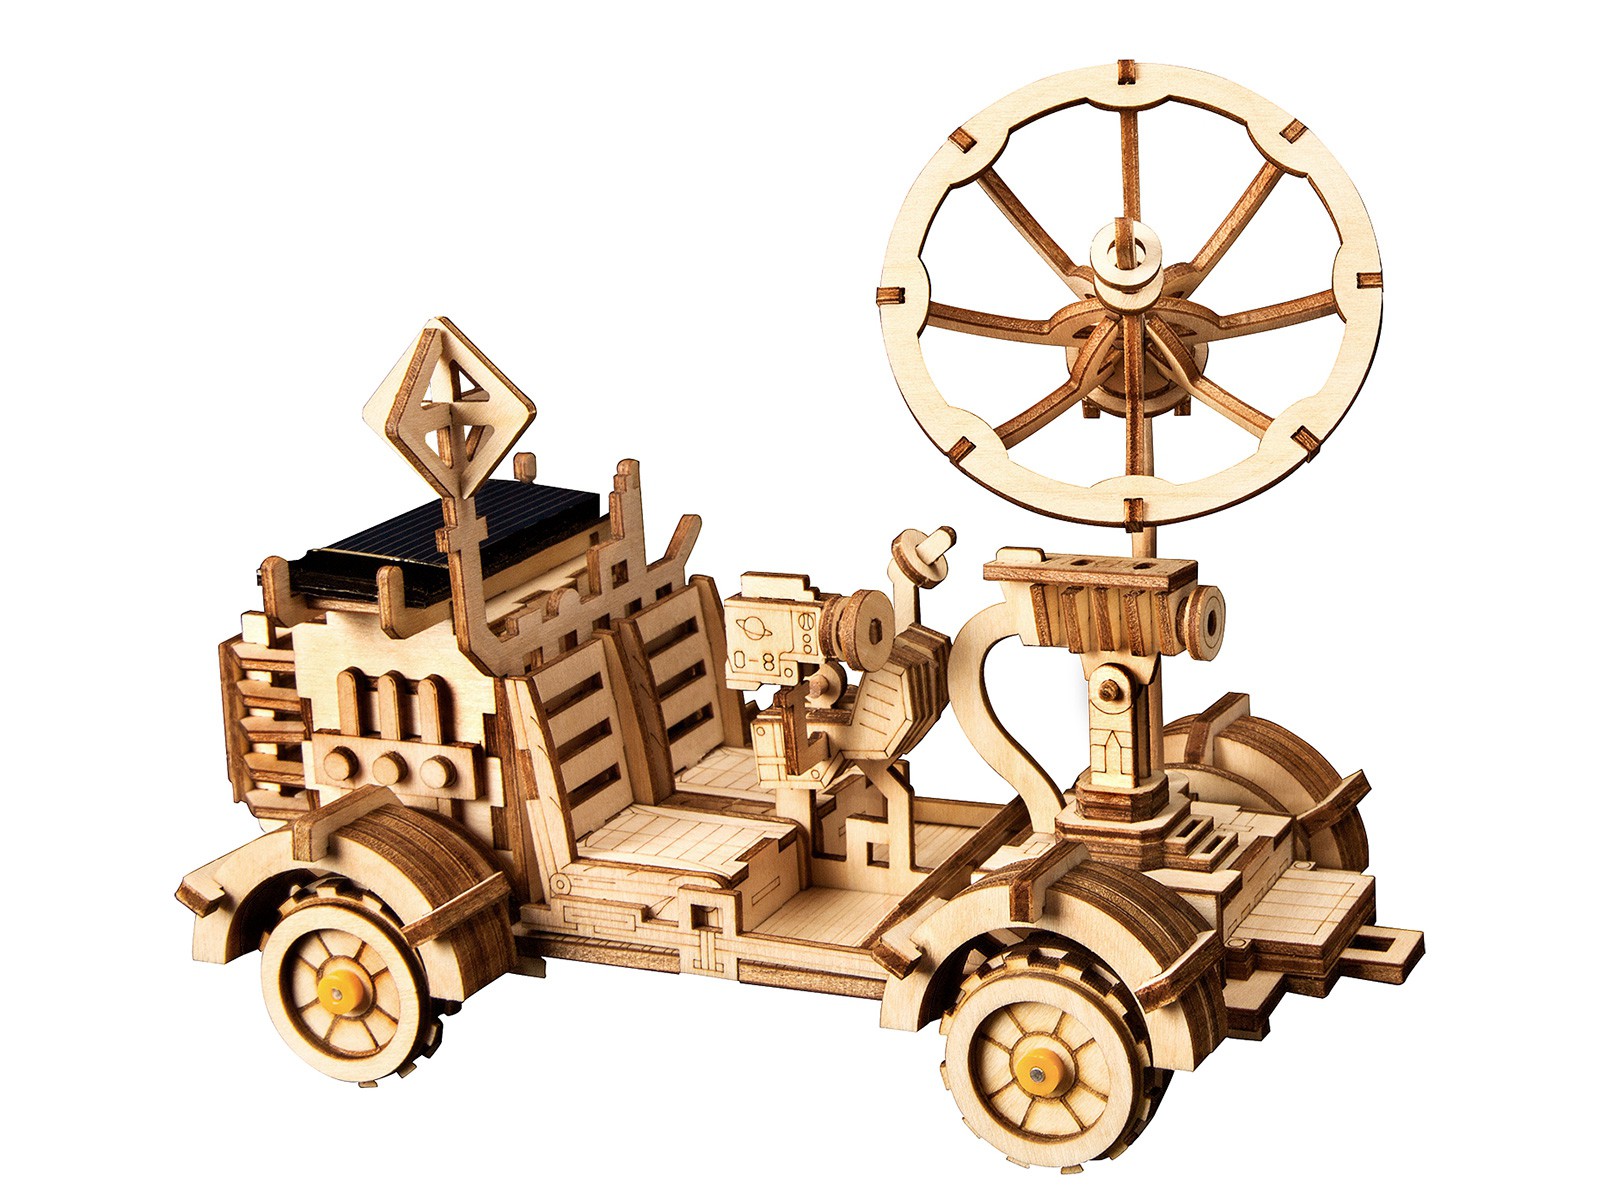 Moon Buggy / Lunar Vehicle 3D Puzzle Wood - Robotime ROKR LS401